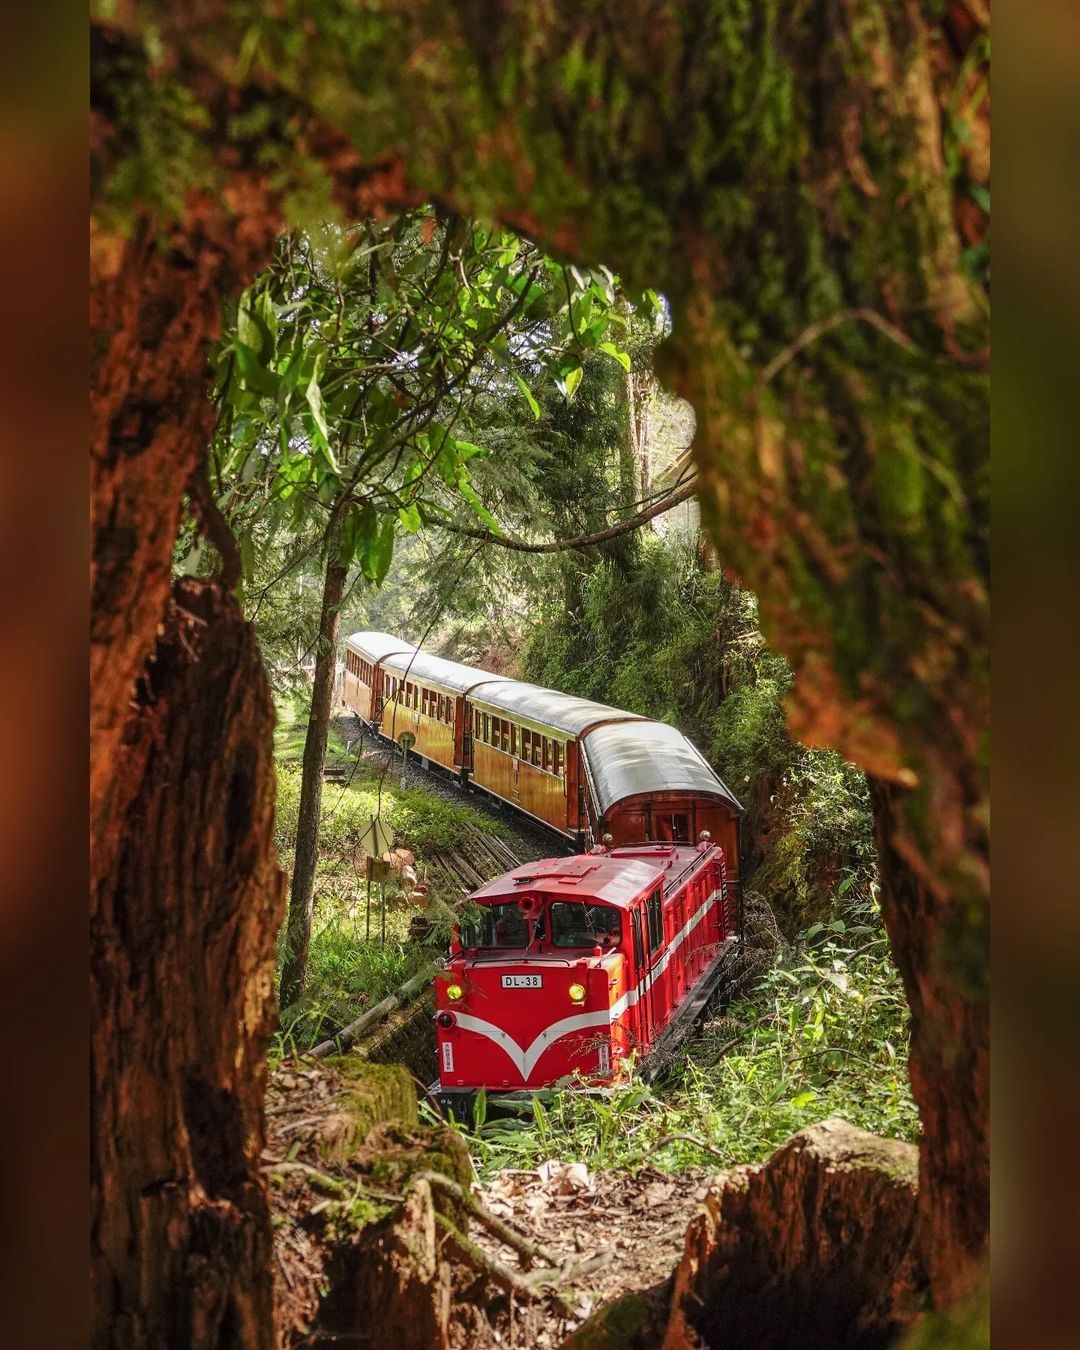 看到照片跟攝影師說「好像玩具喔~~~」這是貨真價實的阿里山小火車啦這就是拍攝角度有趣的地方照片授權感謝 @shun___0707-...